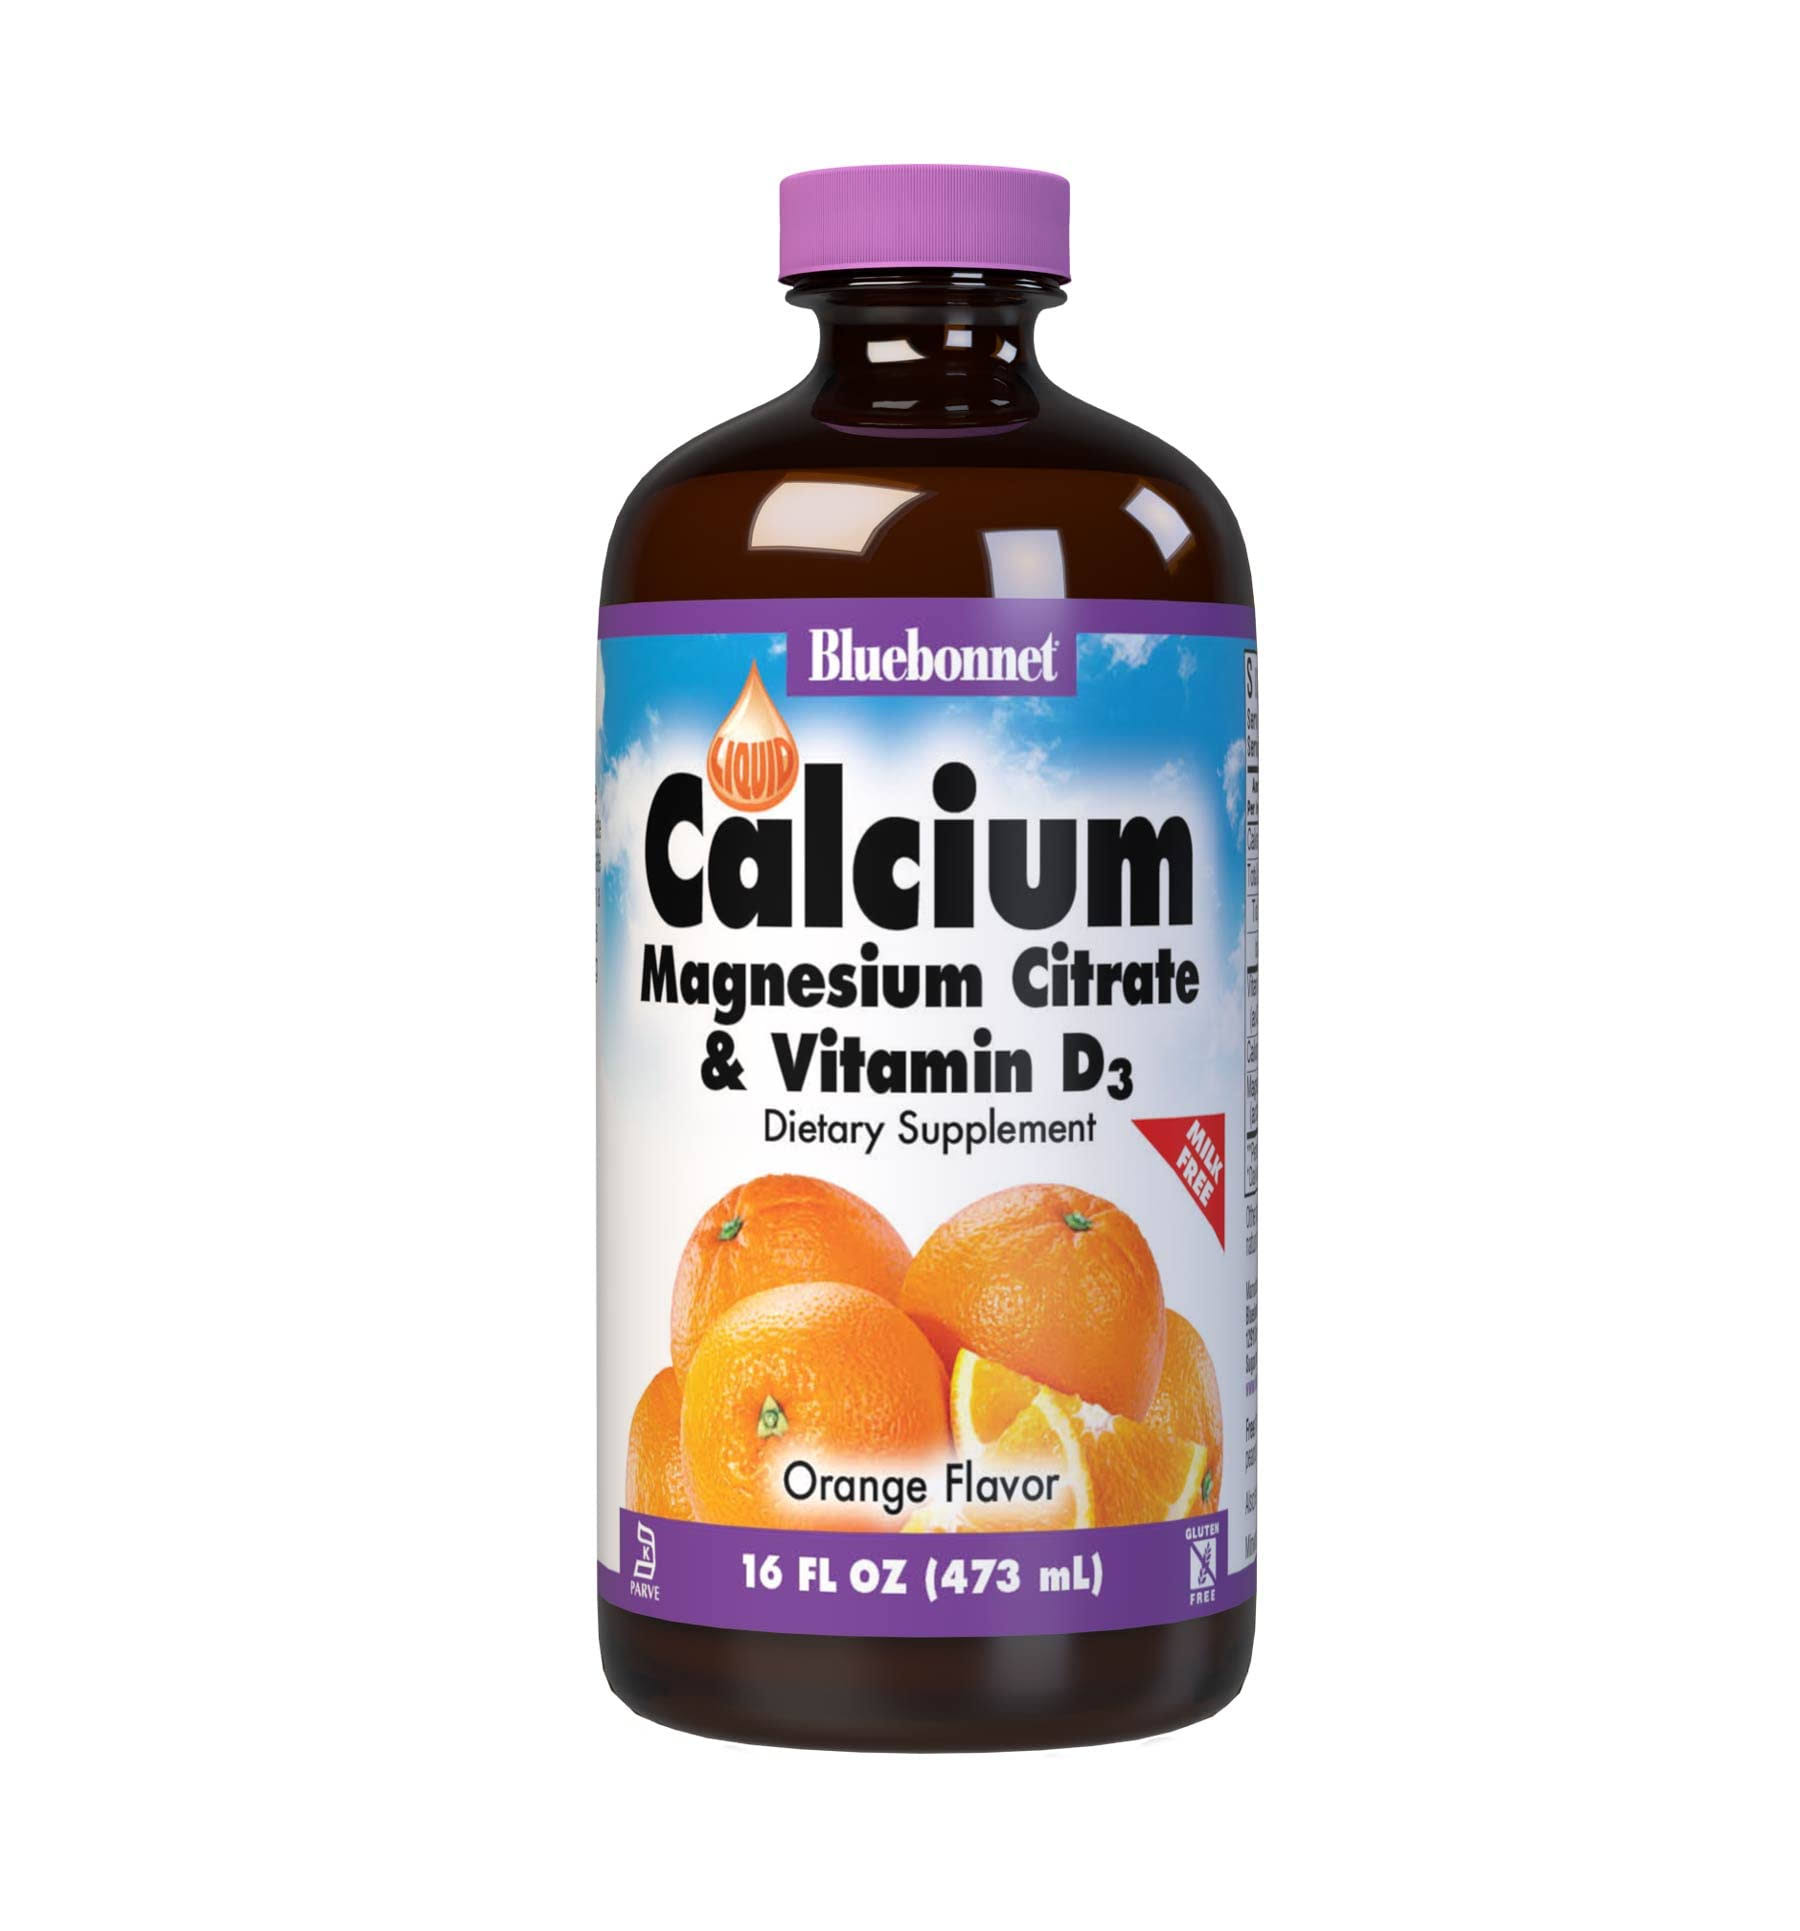 Bluebonnet Nutrition Liquid Calcium Magnesium Citrate Plus Vitamin D3